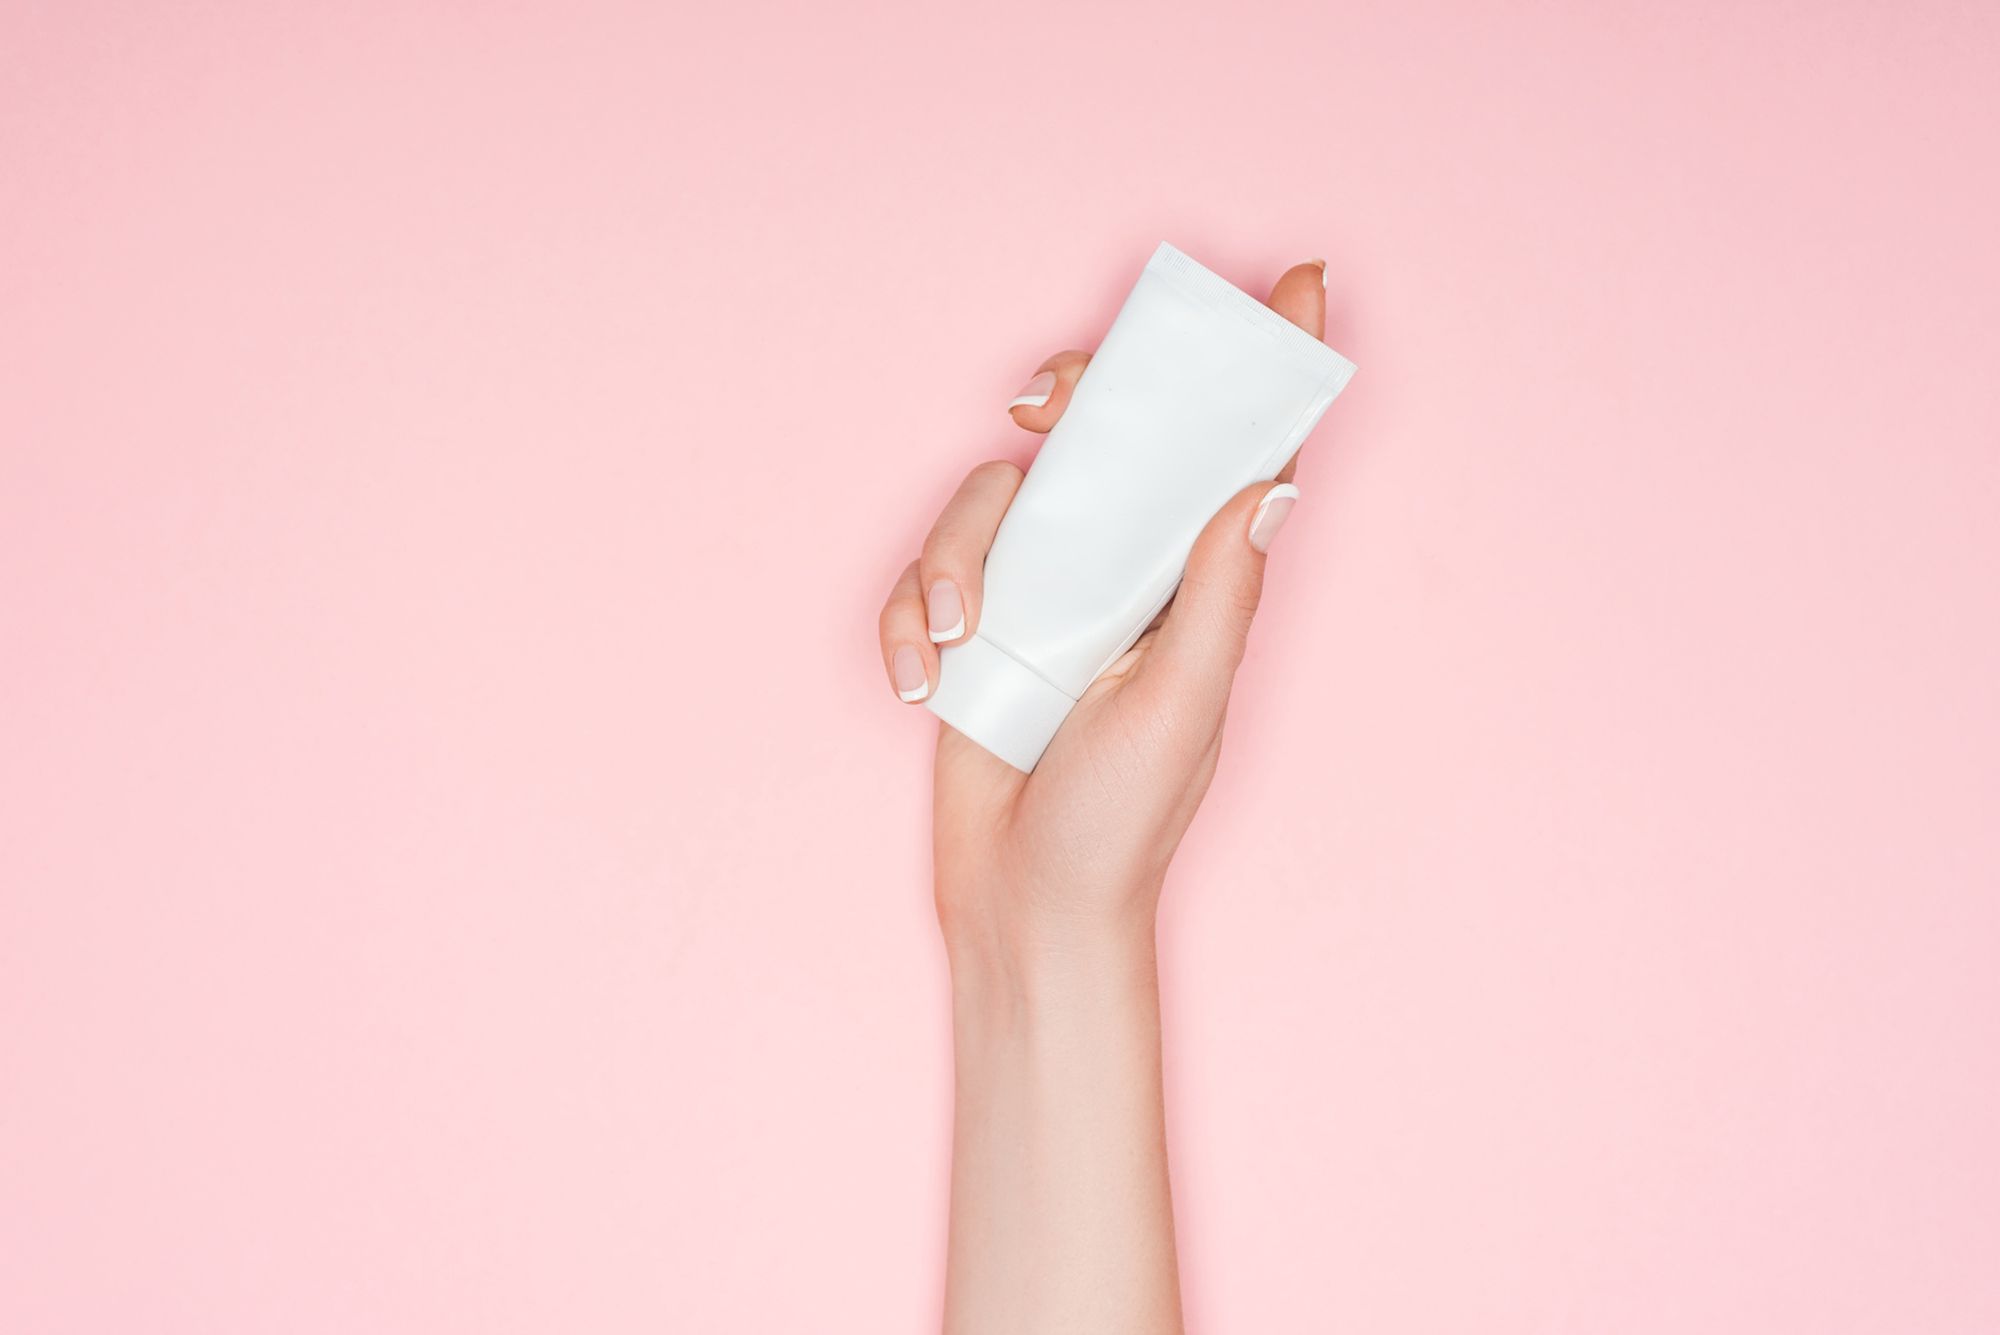 Gleitgel Kondom - Abbildung einer weißen Tube vor einem rosafarbenem Hintergrund, welche von einer weiblichen Hand gehalten wird.